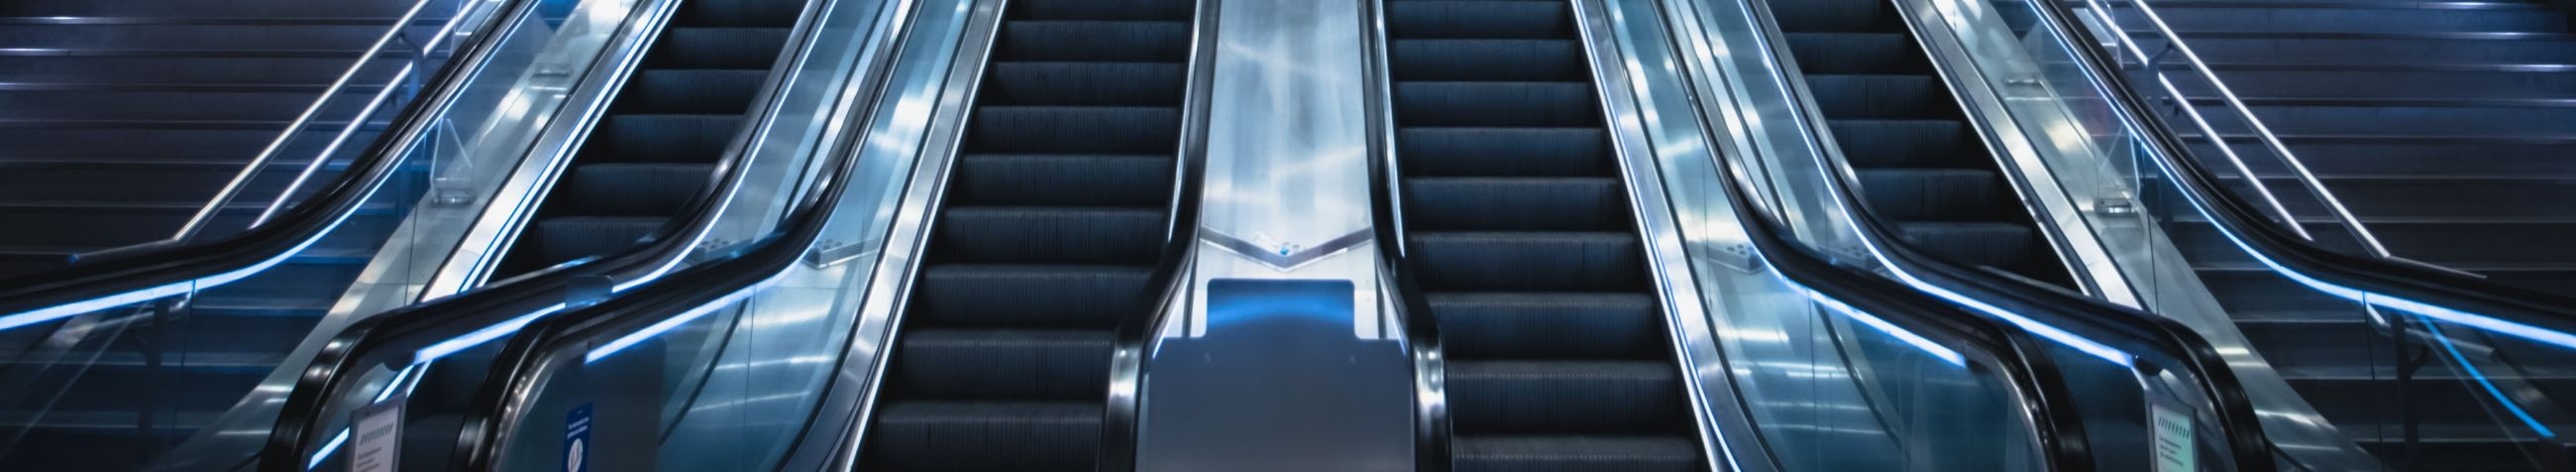 EESTI OTIS AS on spetsialiseerunud tõsteseadmete ja liikurteede pakkumisele, hõlmates väikese kuni suure sõidukõrgusega liftide ning kaasaegsete eskalaatorite lahendusi.